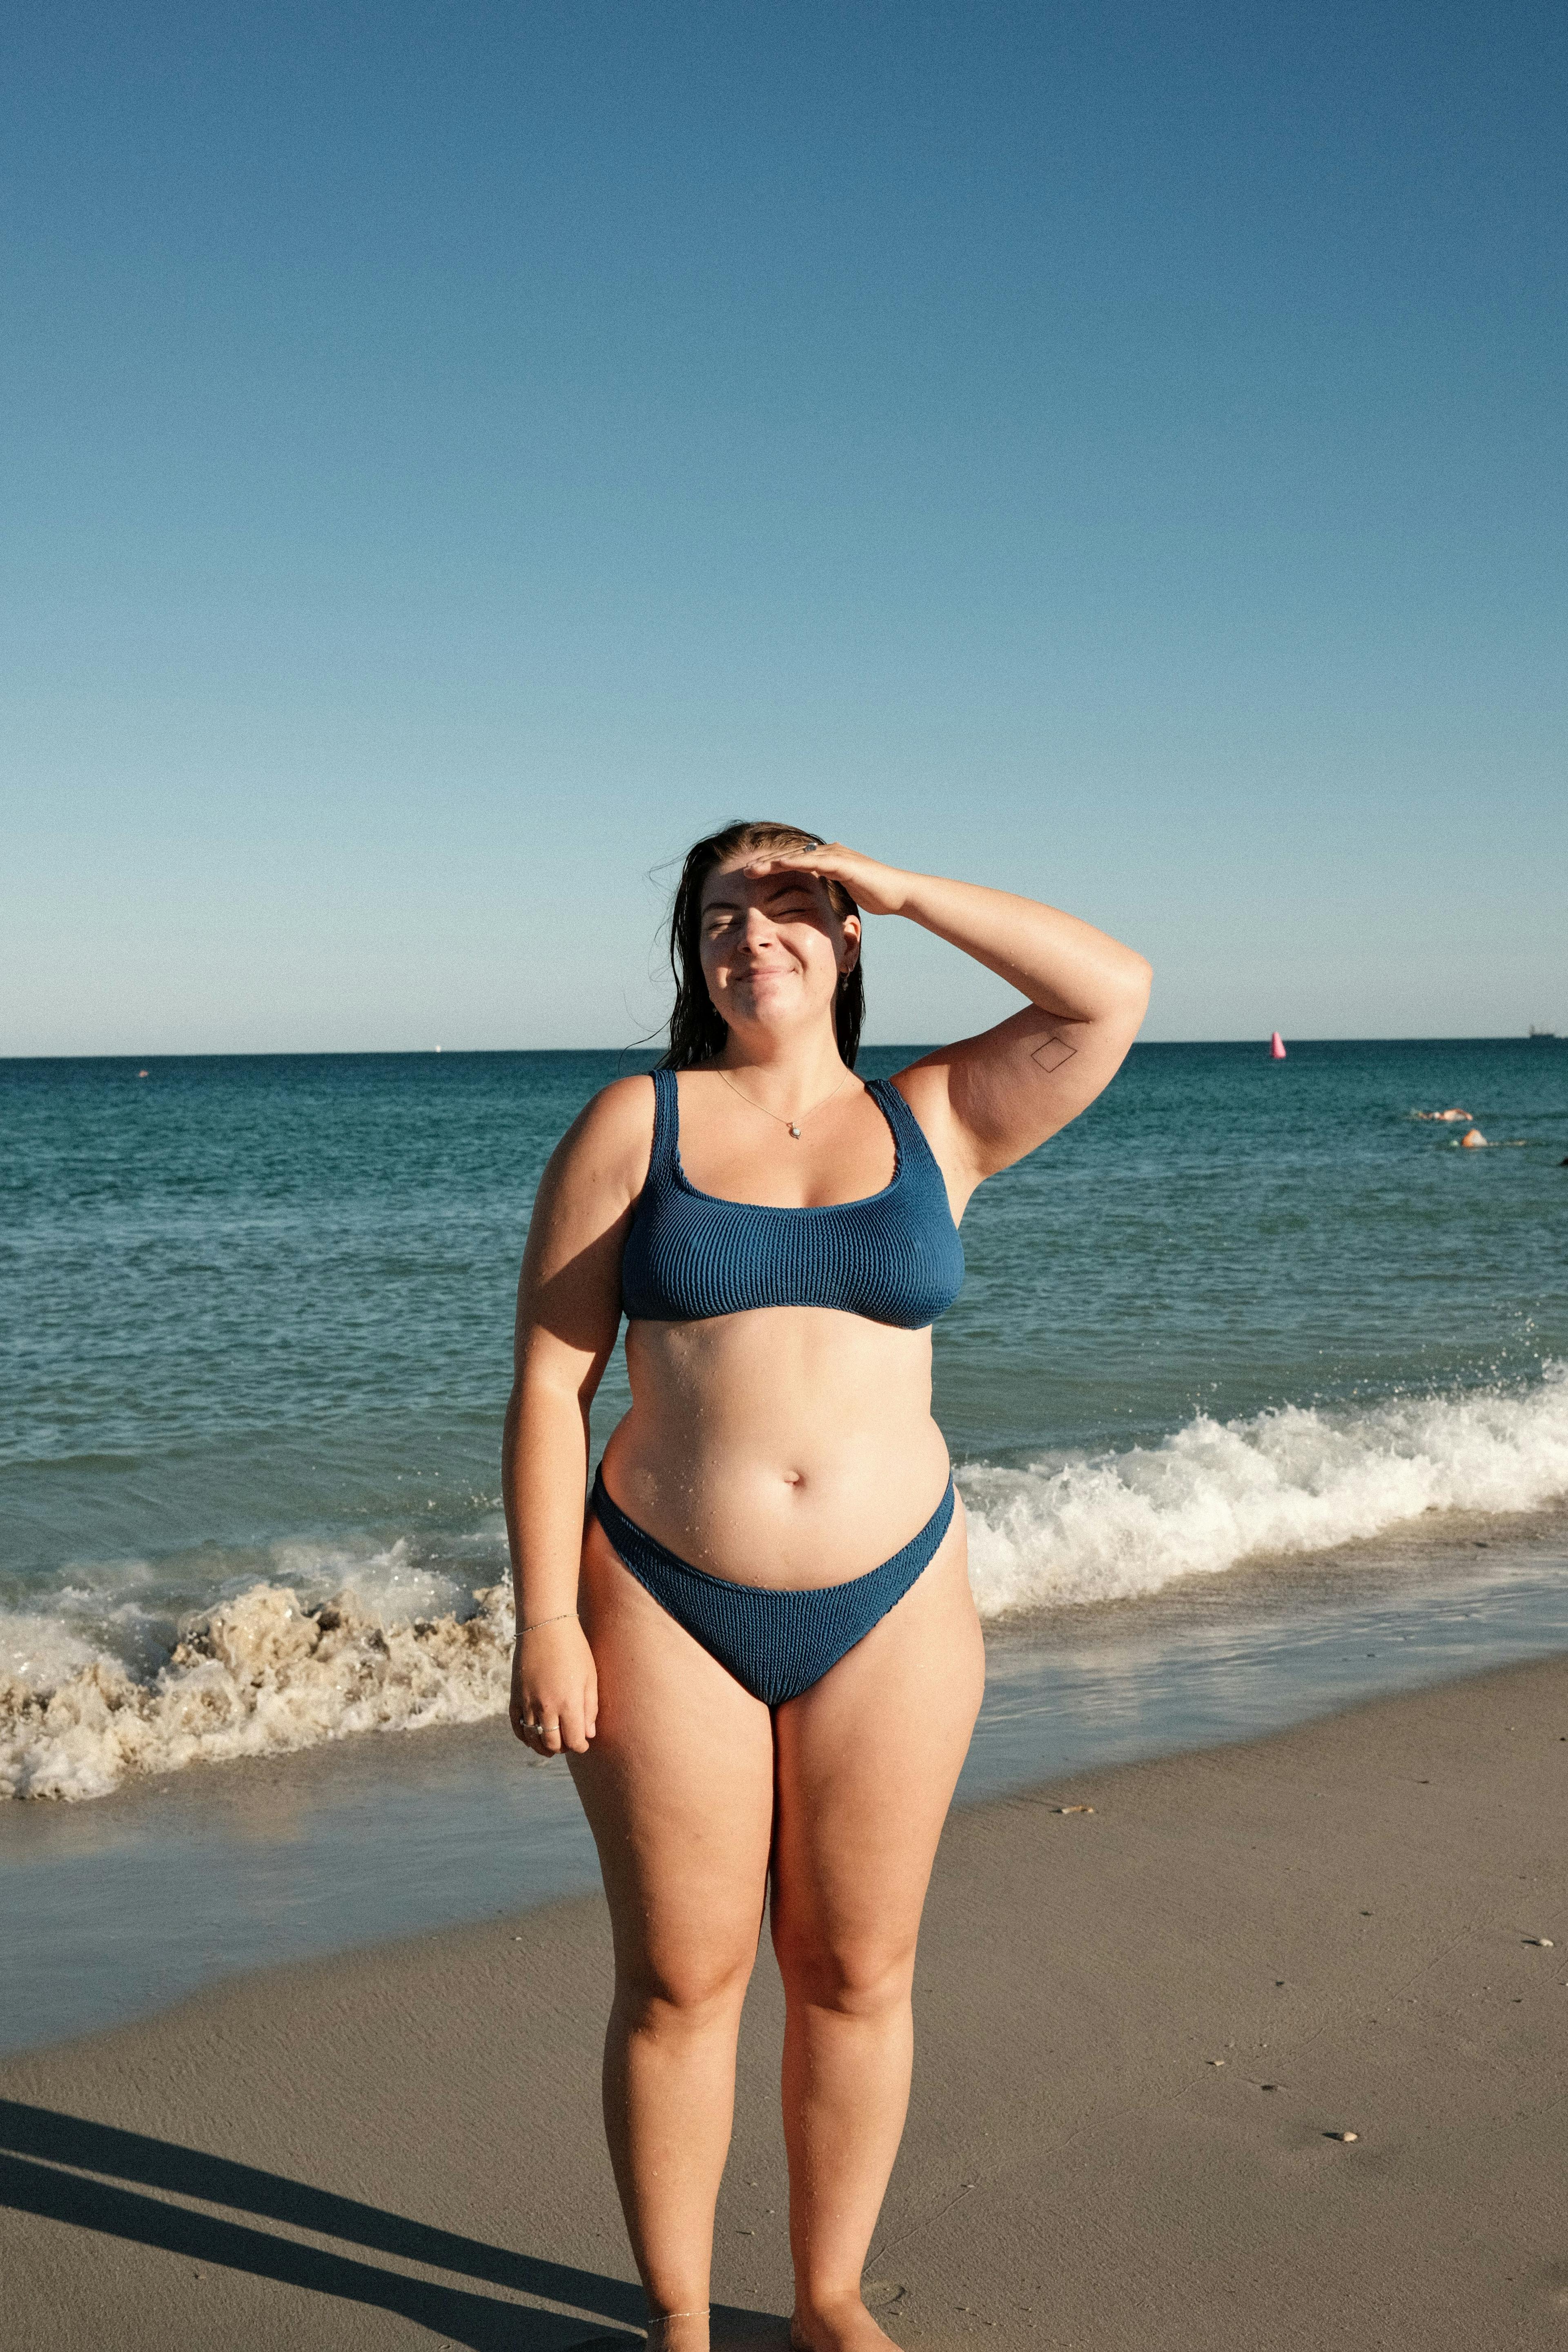 Tara Jeisman at the beach wearing a blue bikini